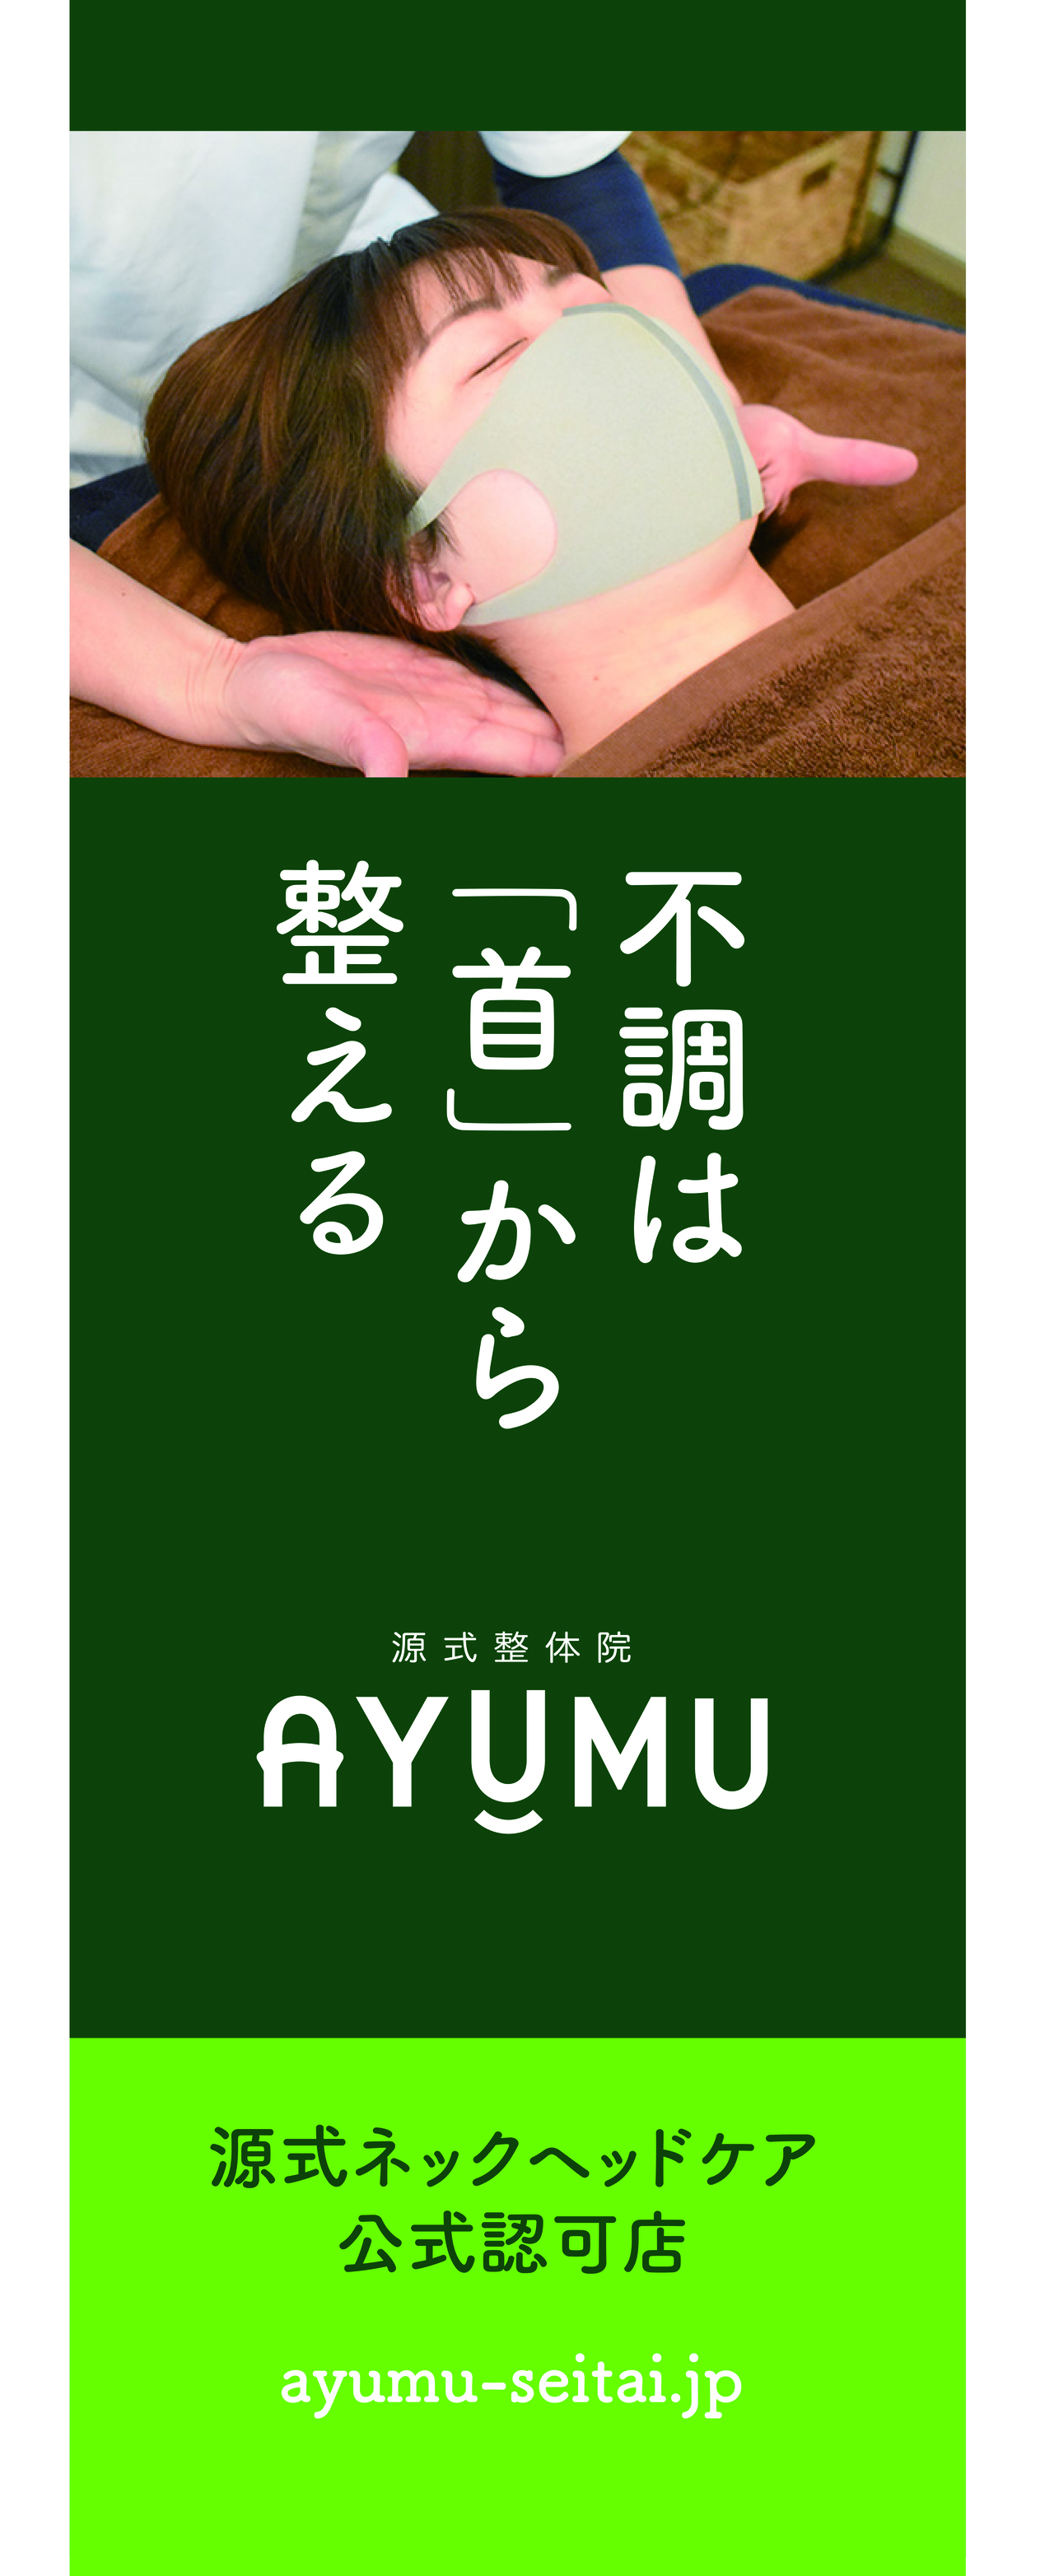 源式整体院 AYUMU広告